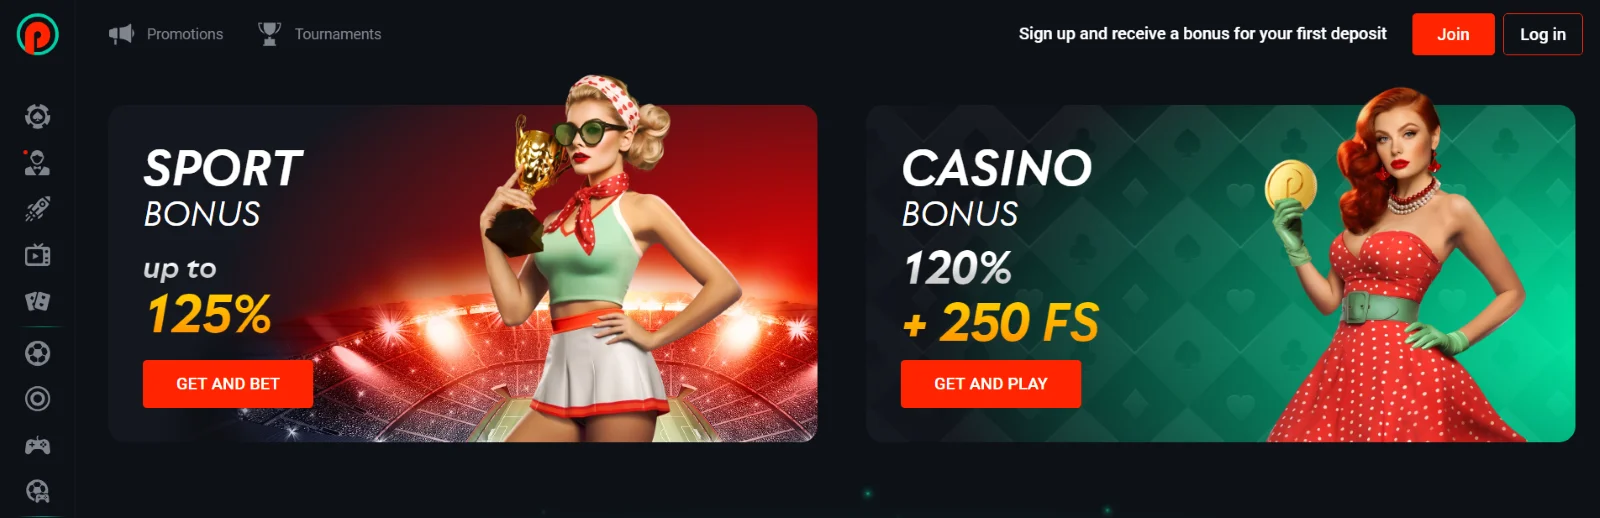 Pin-Up casino bonus